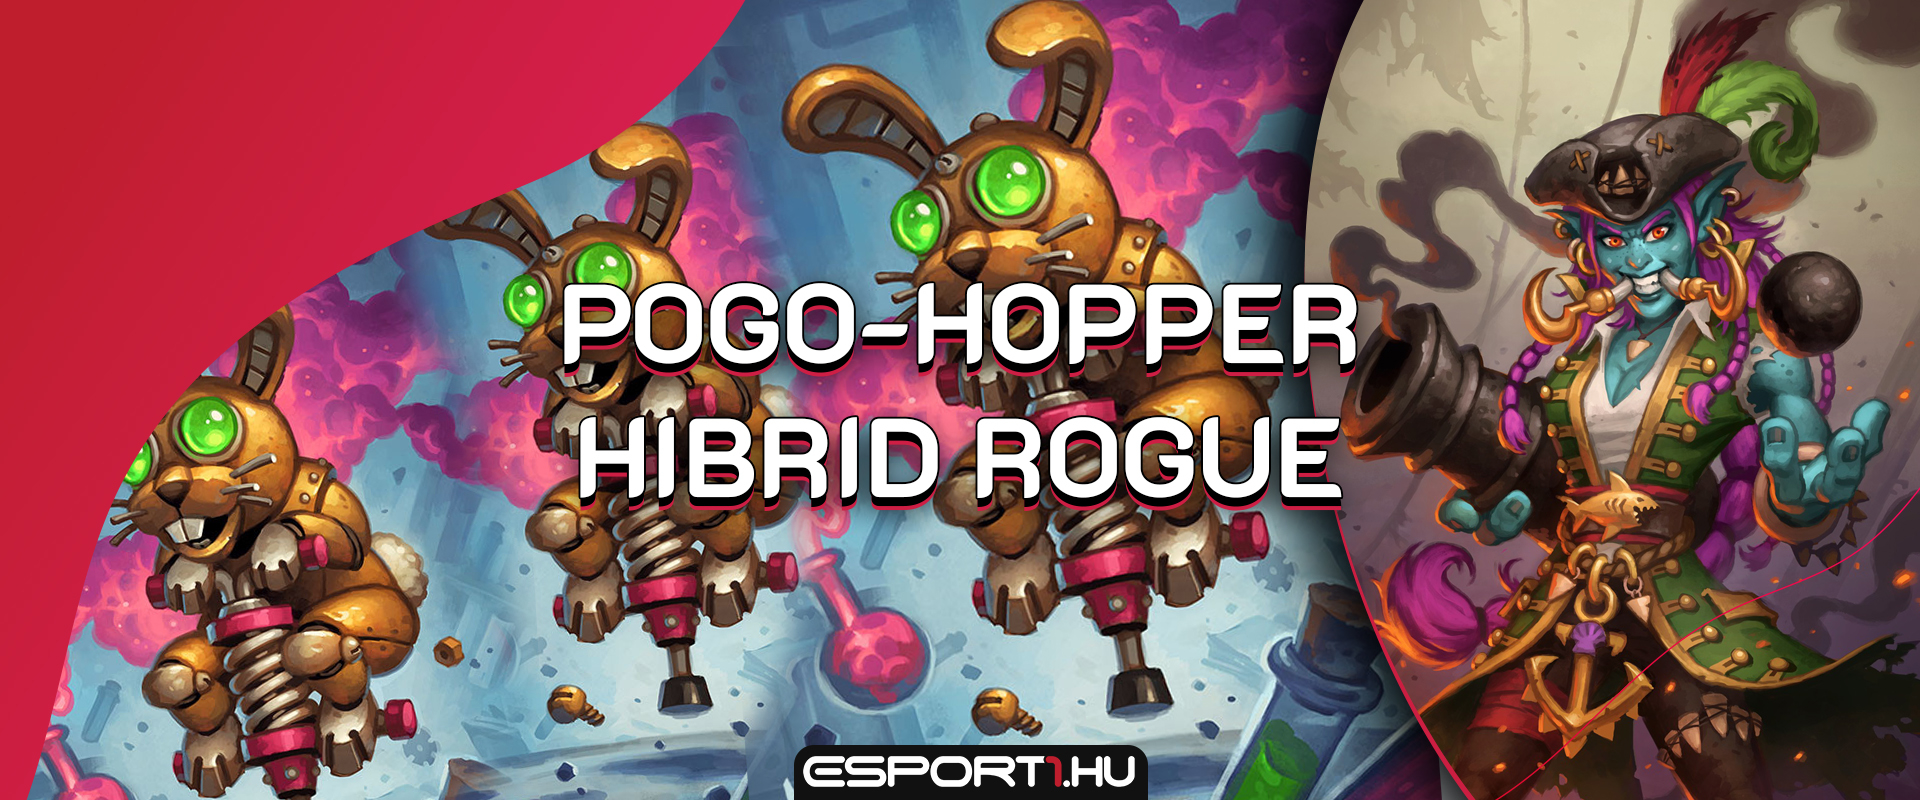 Robotnyuszi horda Hooktusk kapitánysága alatt - Hibrid Pogo-Hopper Rogue bemutató